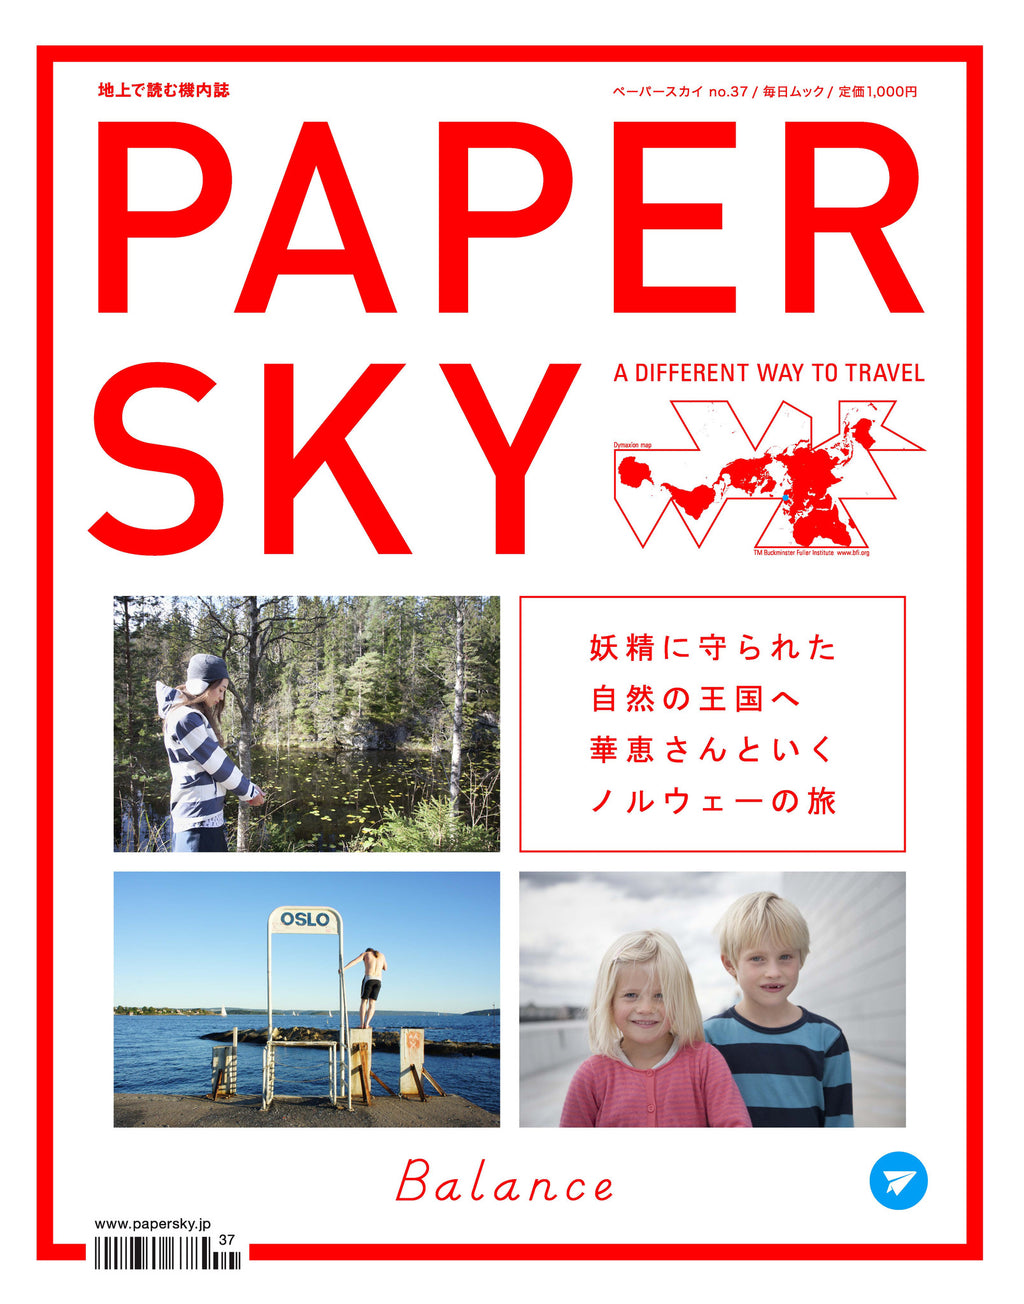 ノルウェイの森, Norway, papersky magazine, blance